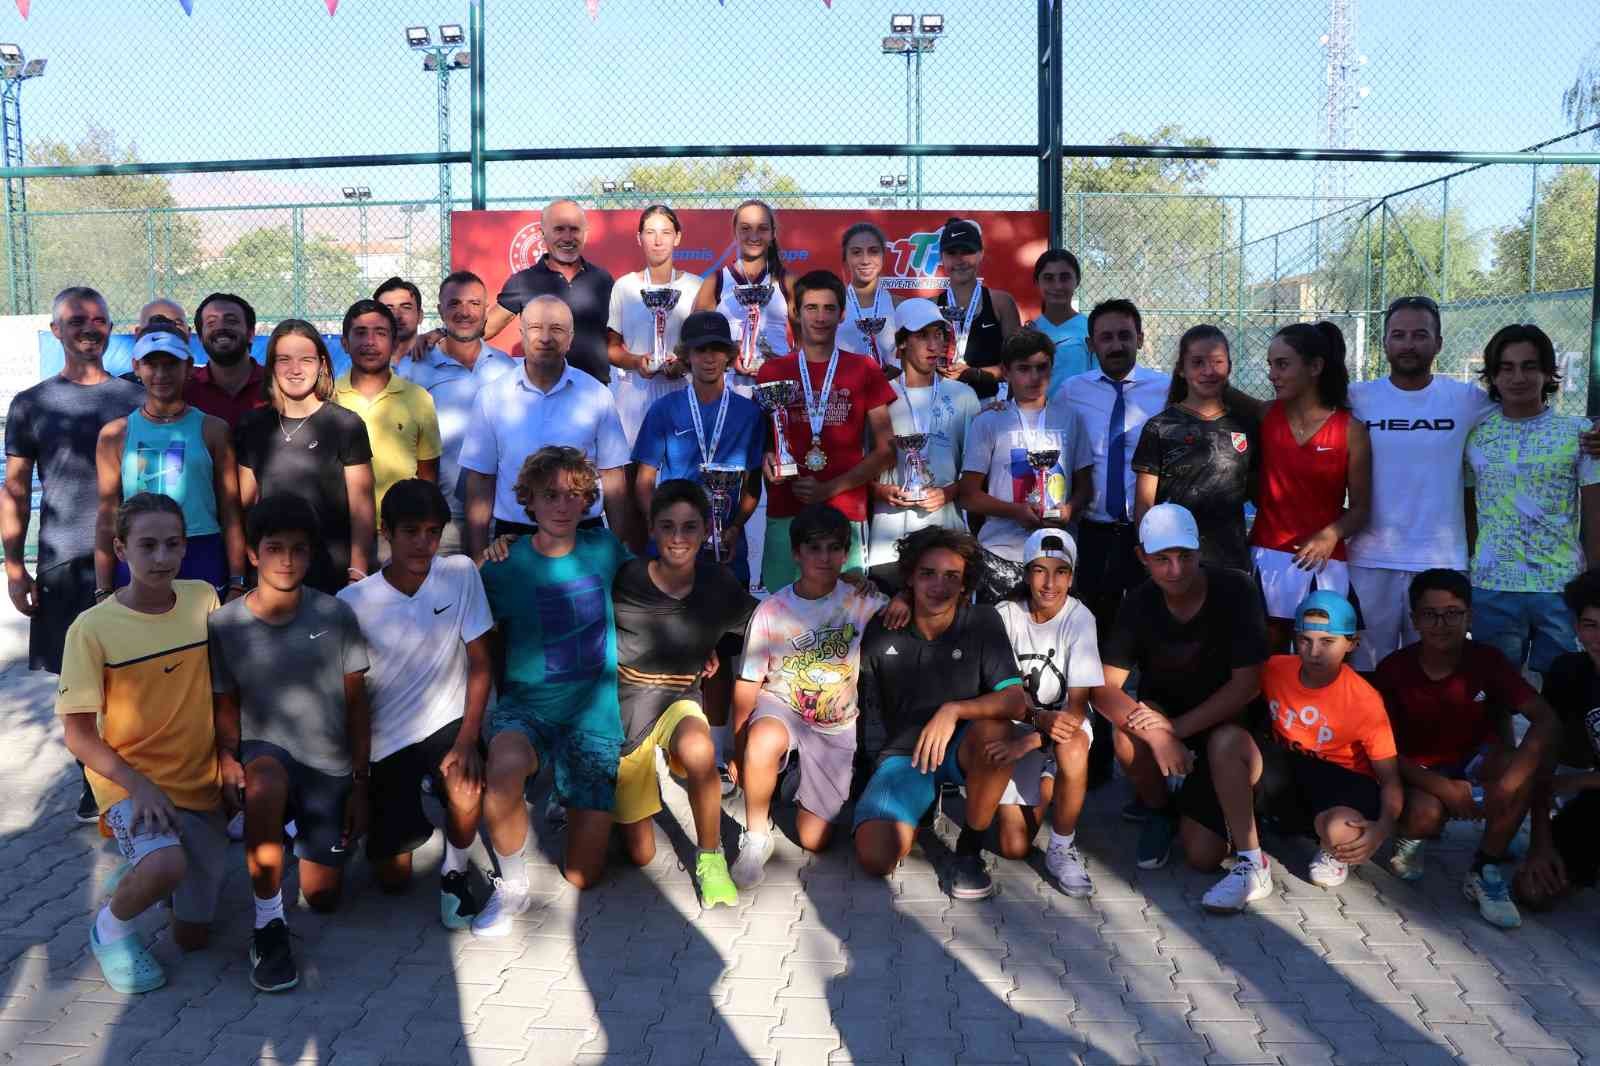 Uluslararası Erzincan Ergan Cup Tenis Turnuvası